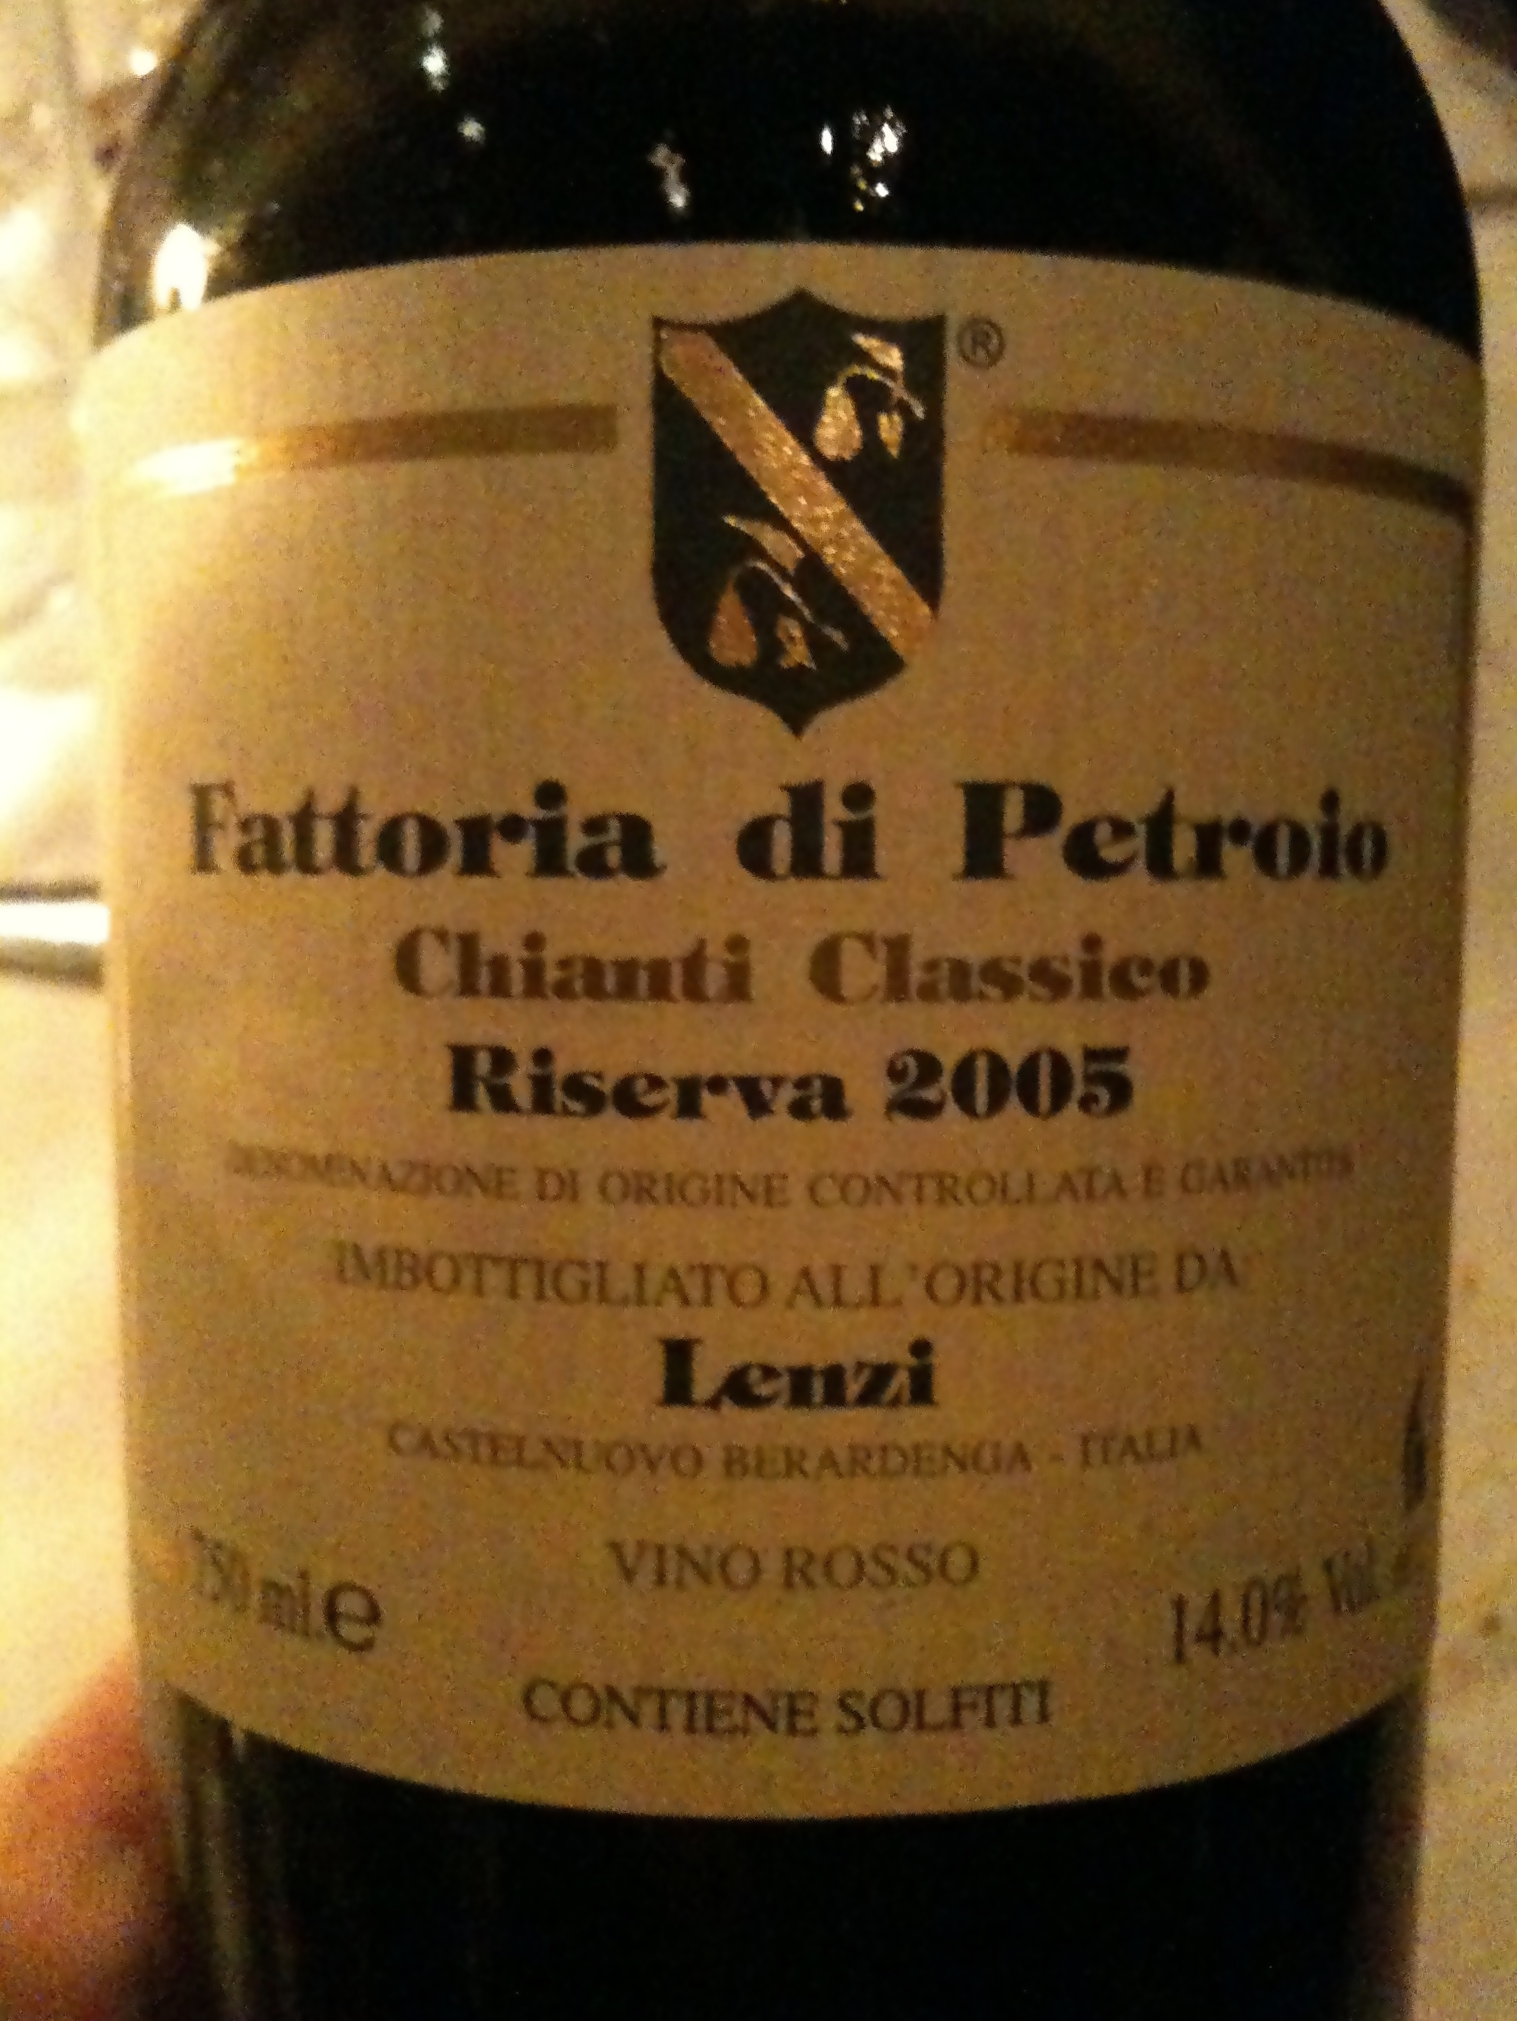 Fattoria di Petroio Chianti Classico Riserva 2005